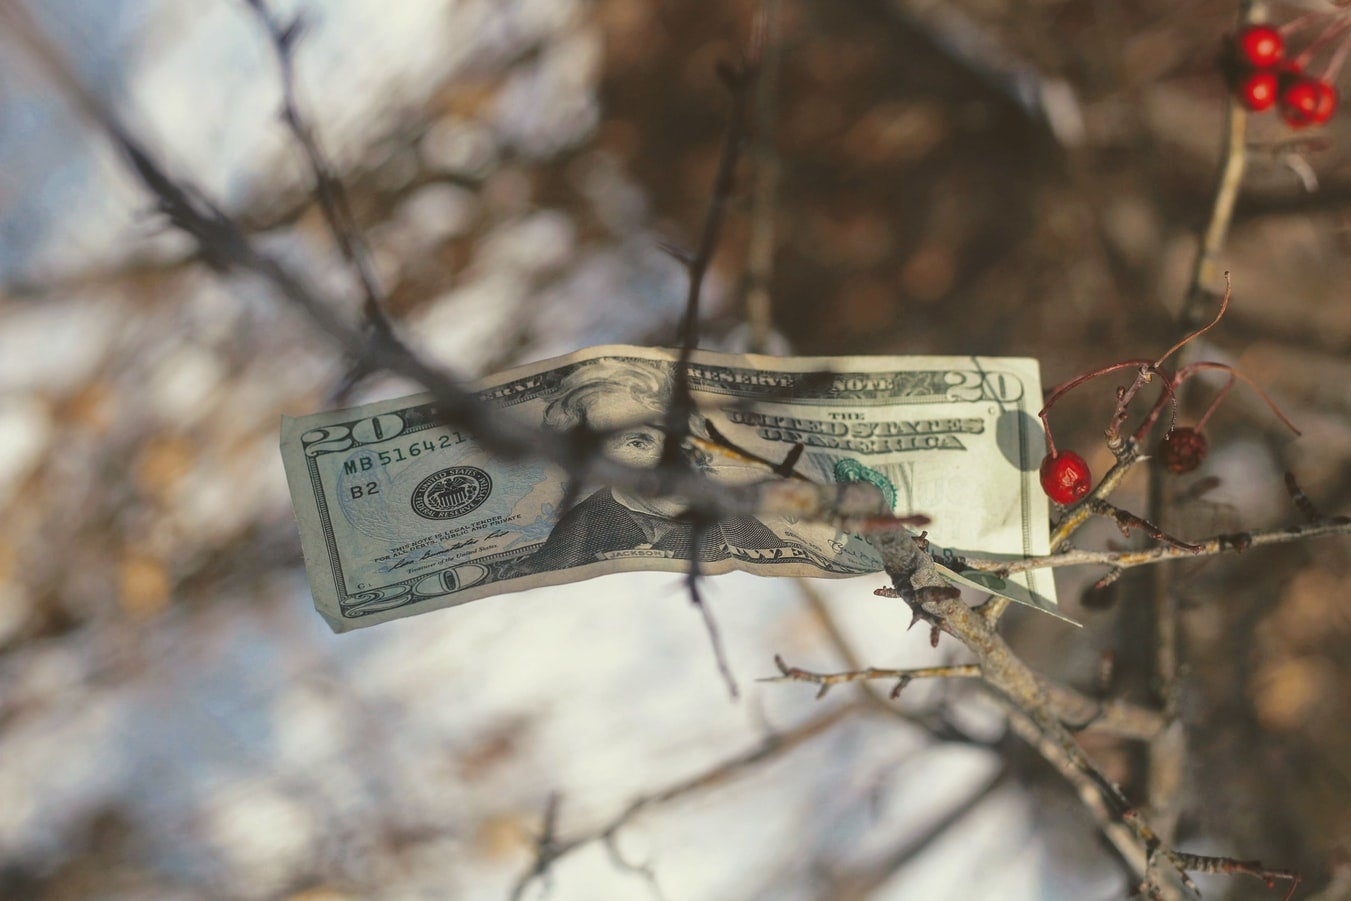 Money trees